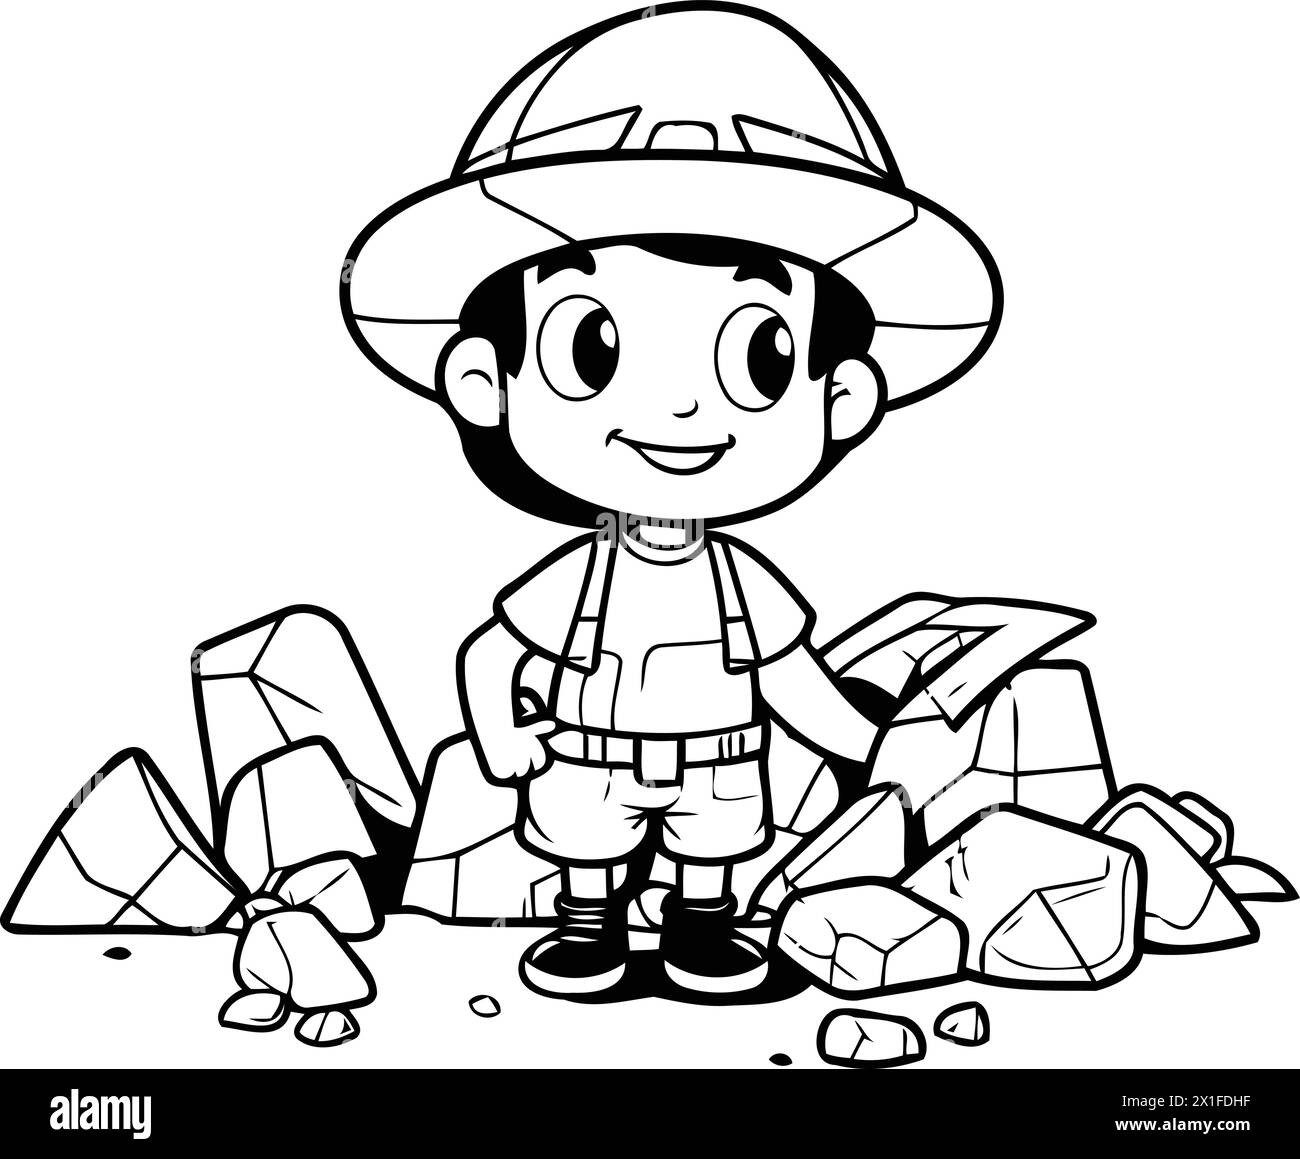 Garçon explorateur avec carte au trésor dans sa main. Illustration vectorielle de dessin animé. Illustration de Vecteur